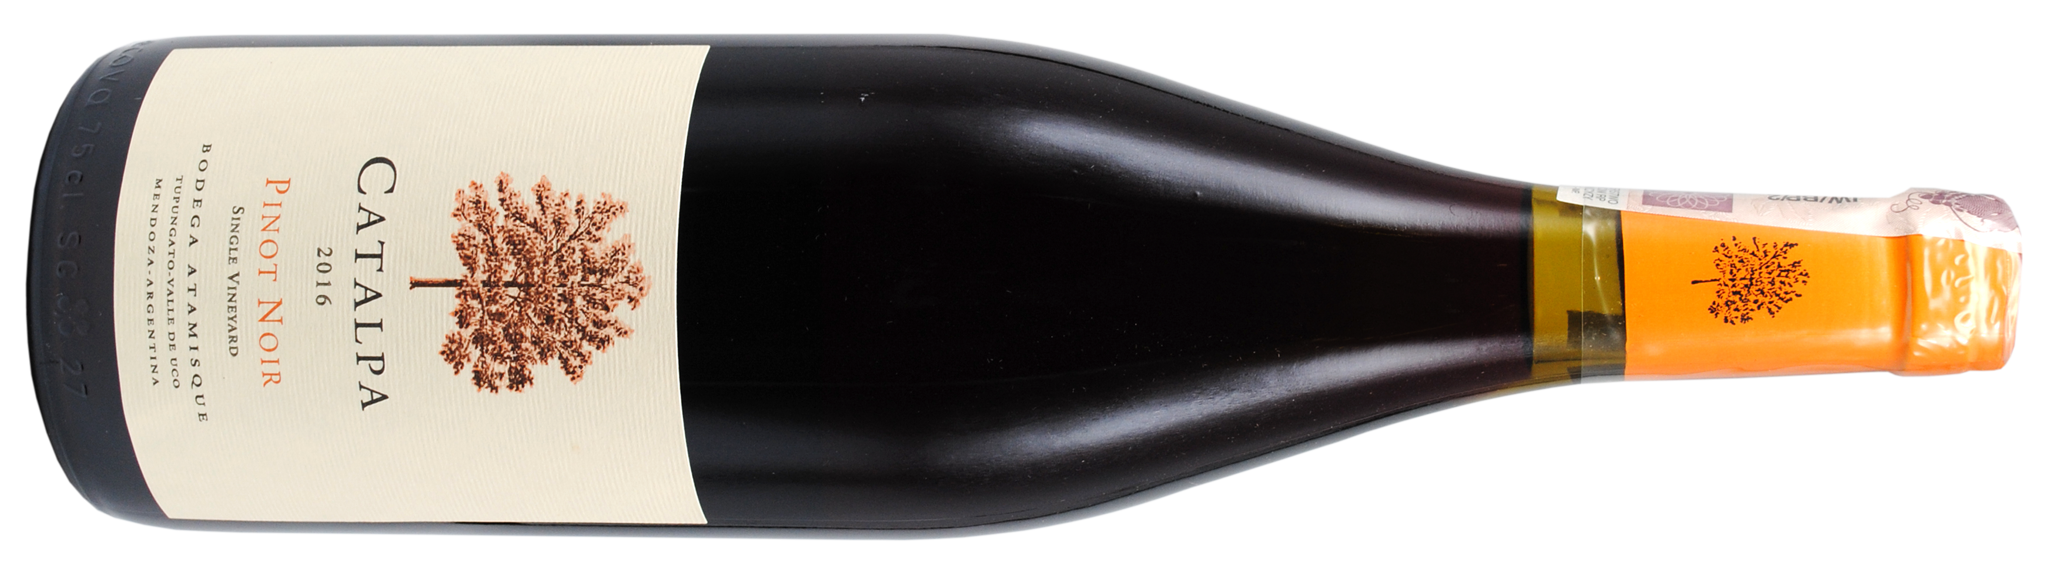 Catalpa Pinot Noir bt